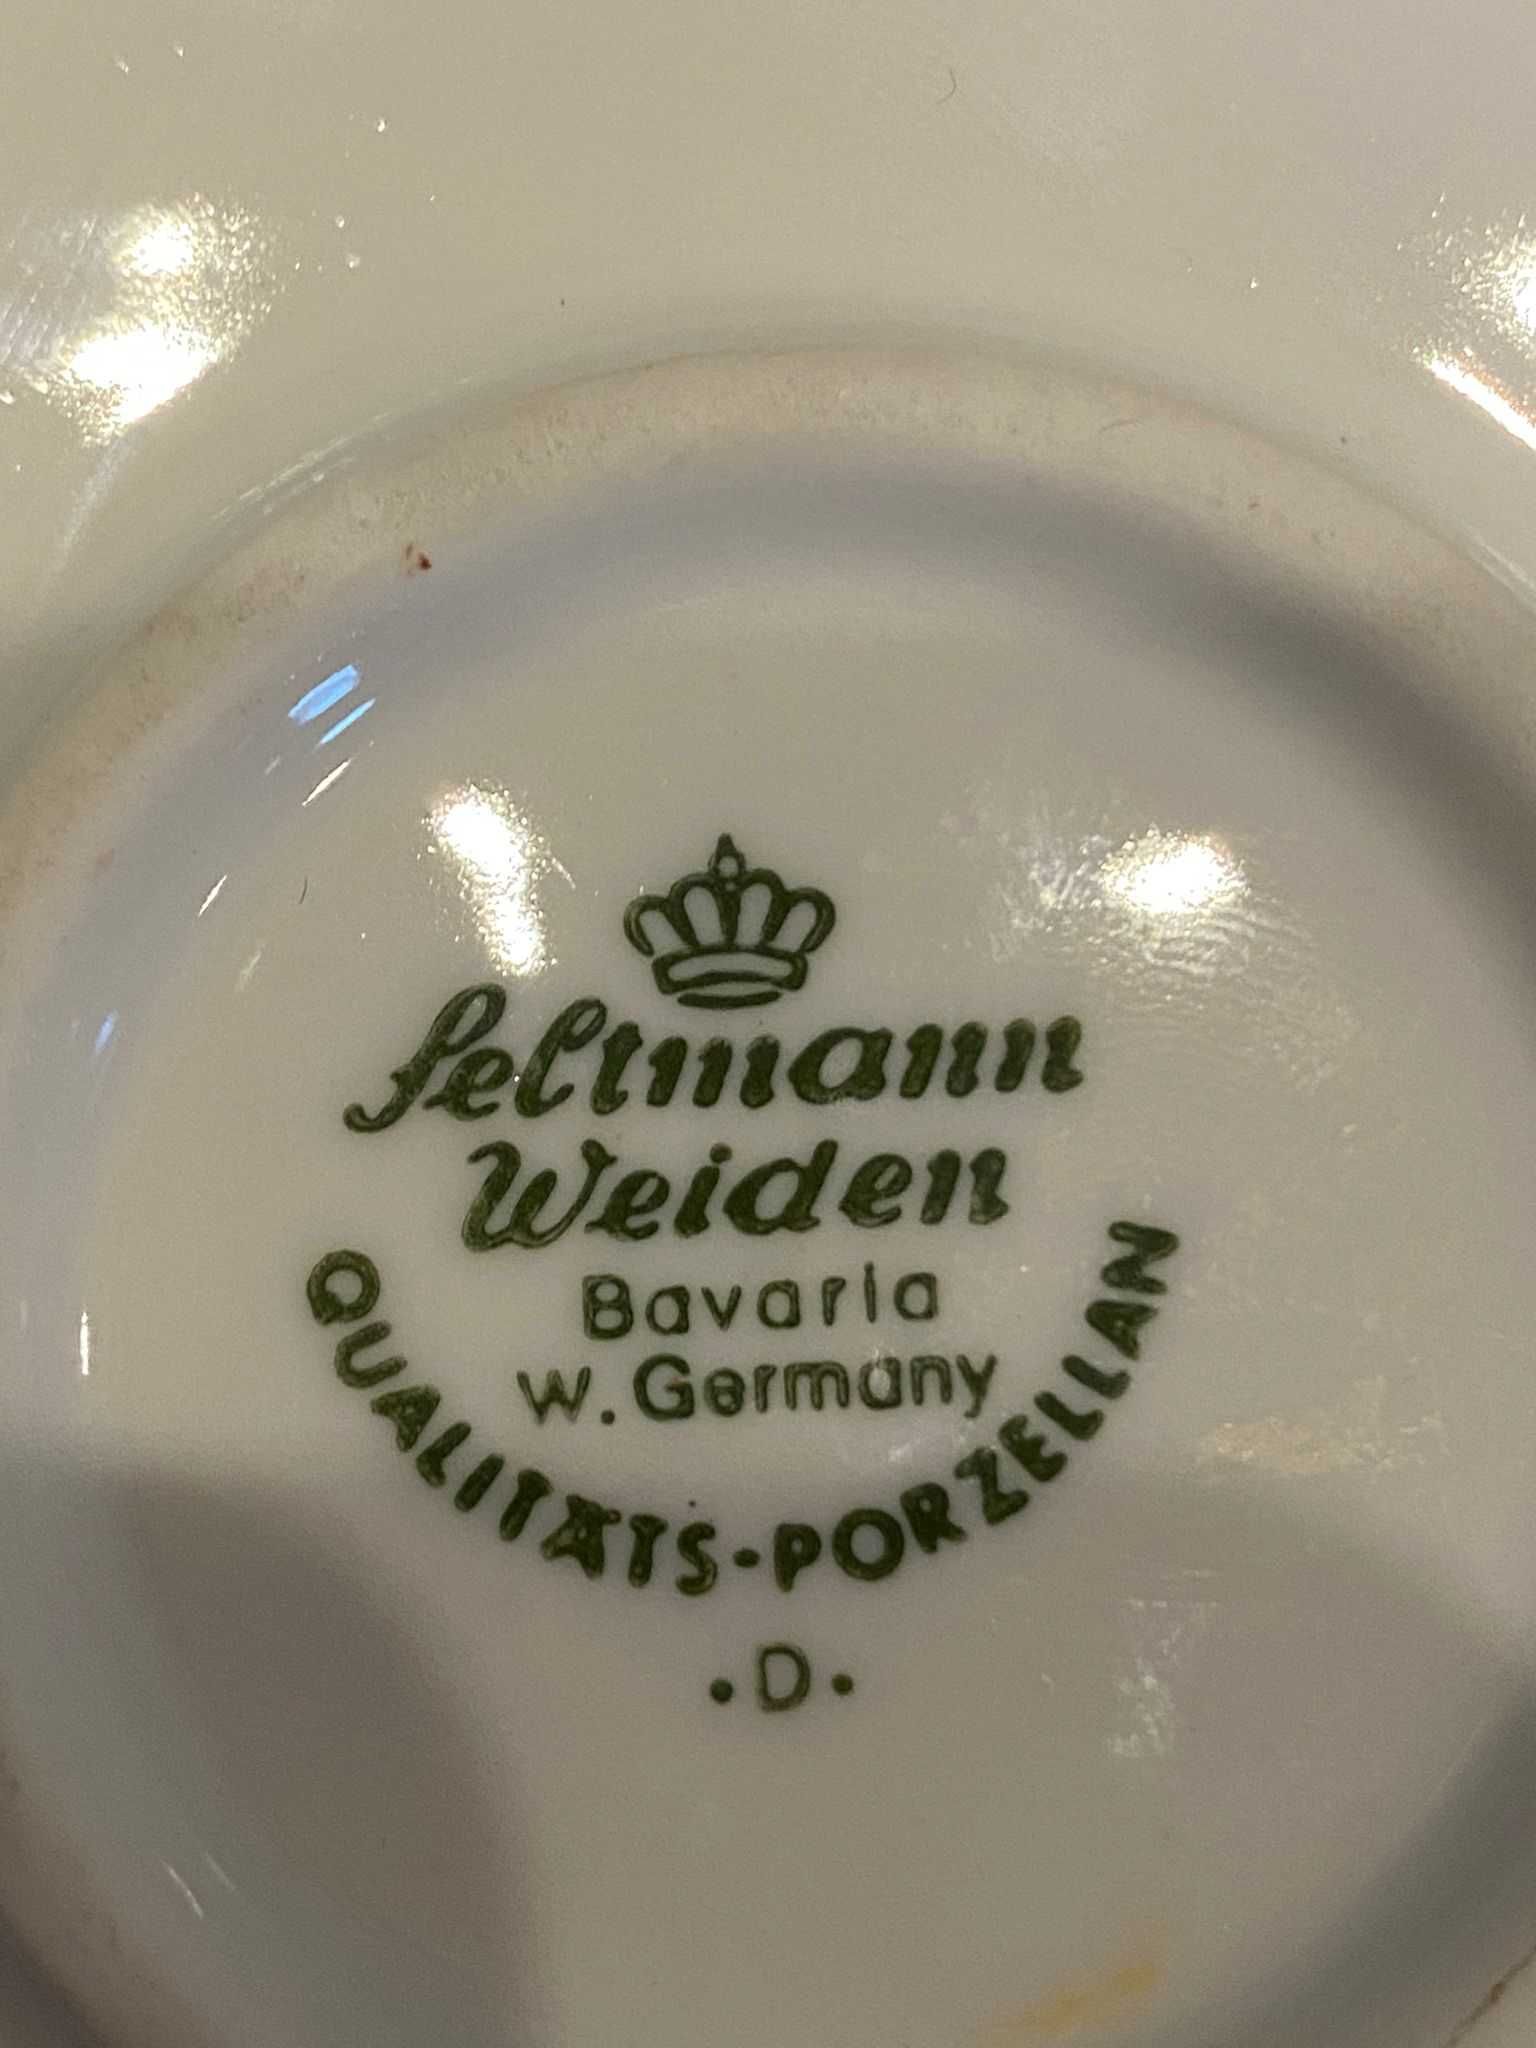 Podgrzewacz do dzbanka/czajnika porcelana Seltmann Bavaria.